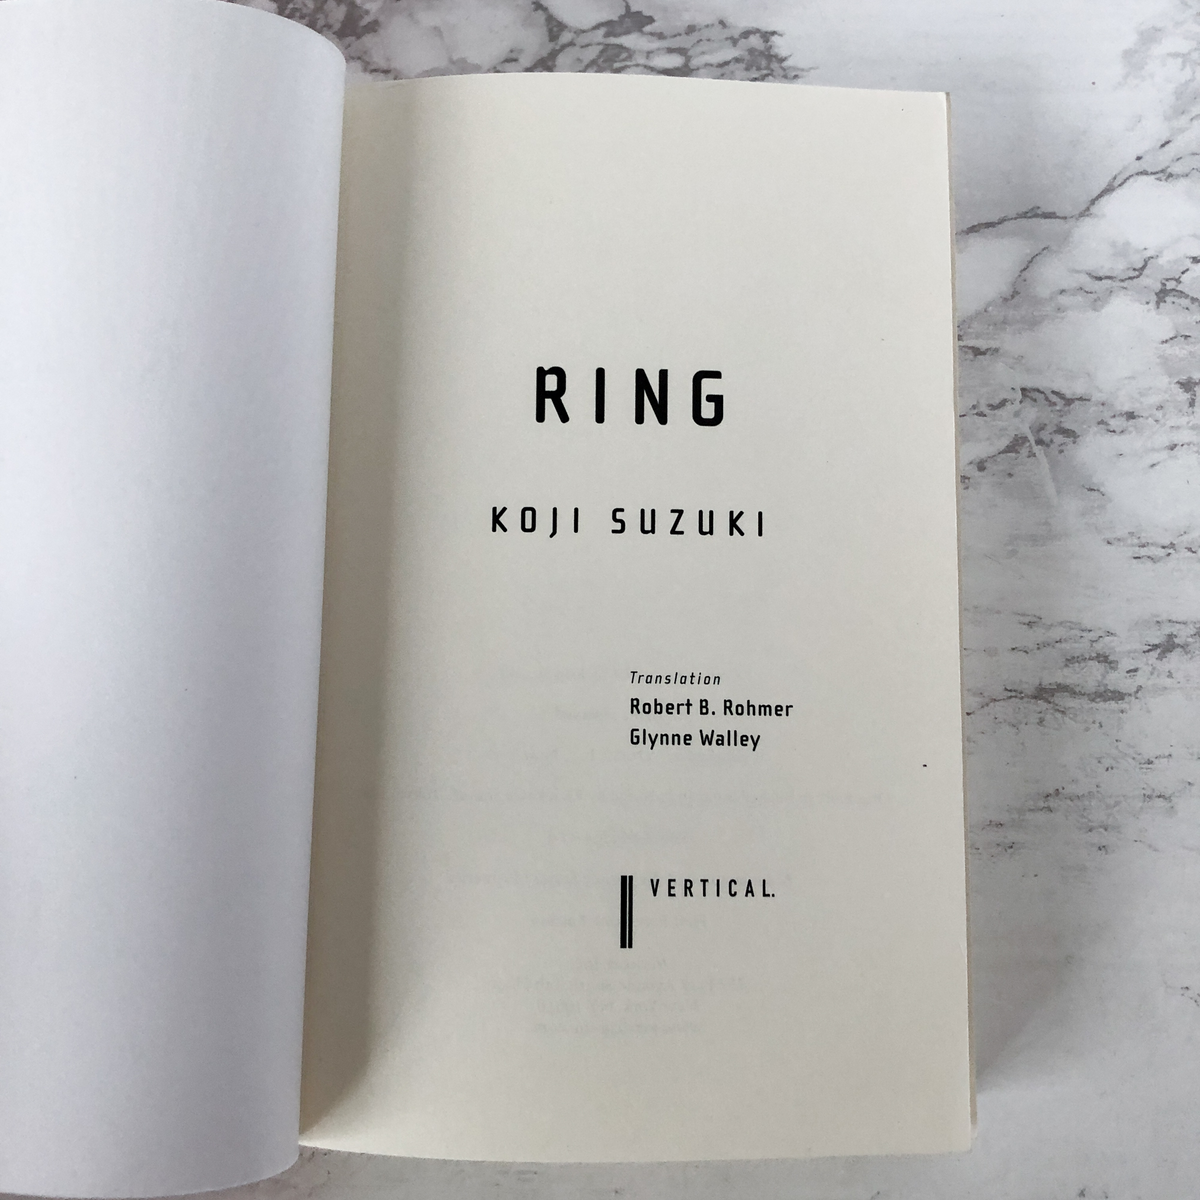 Ring by Koji Suzuki [RINGU 1]